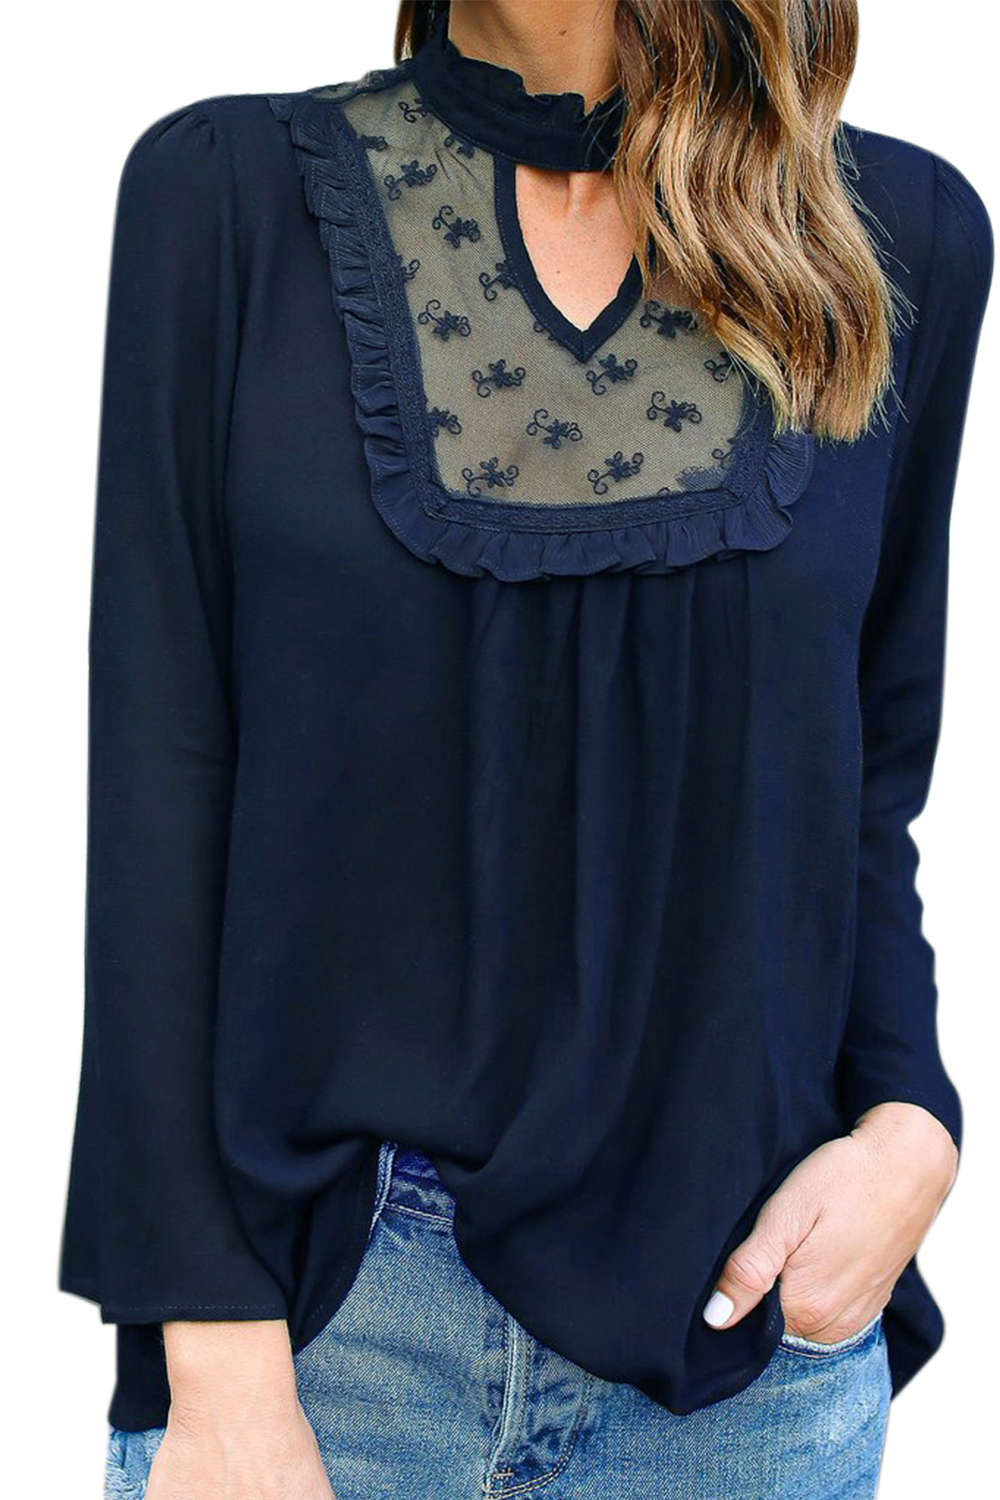 Iyasson Woman Long Sleeve Lace Stitching Chiffon Shirt